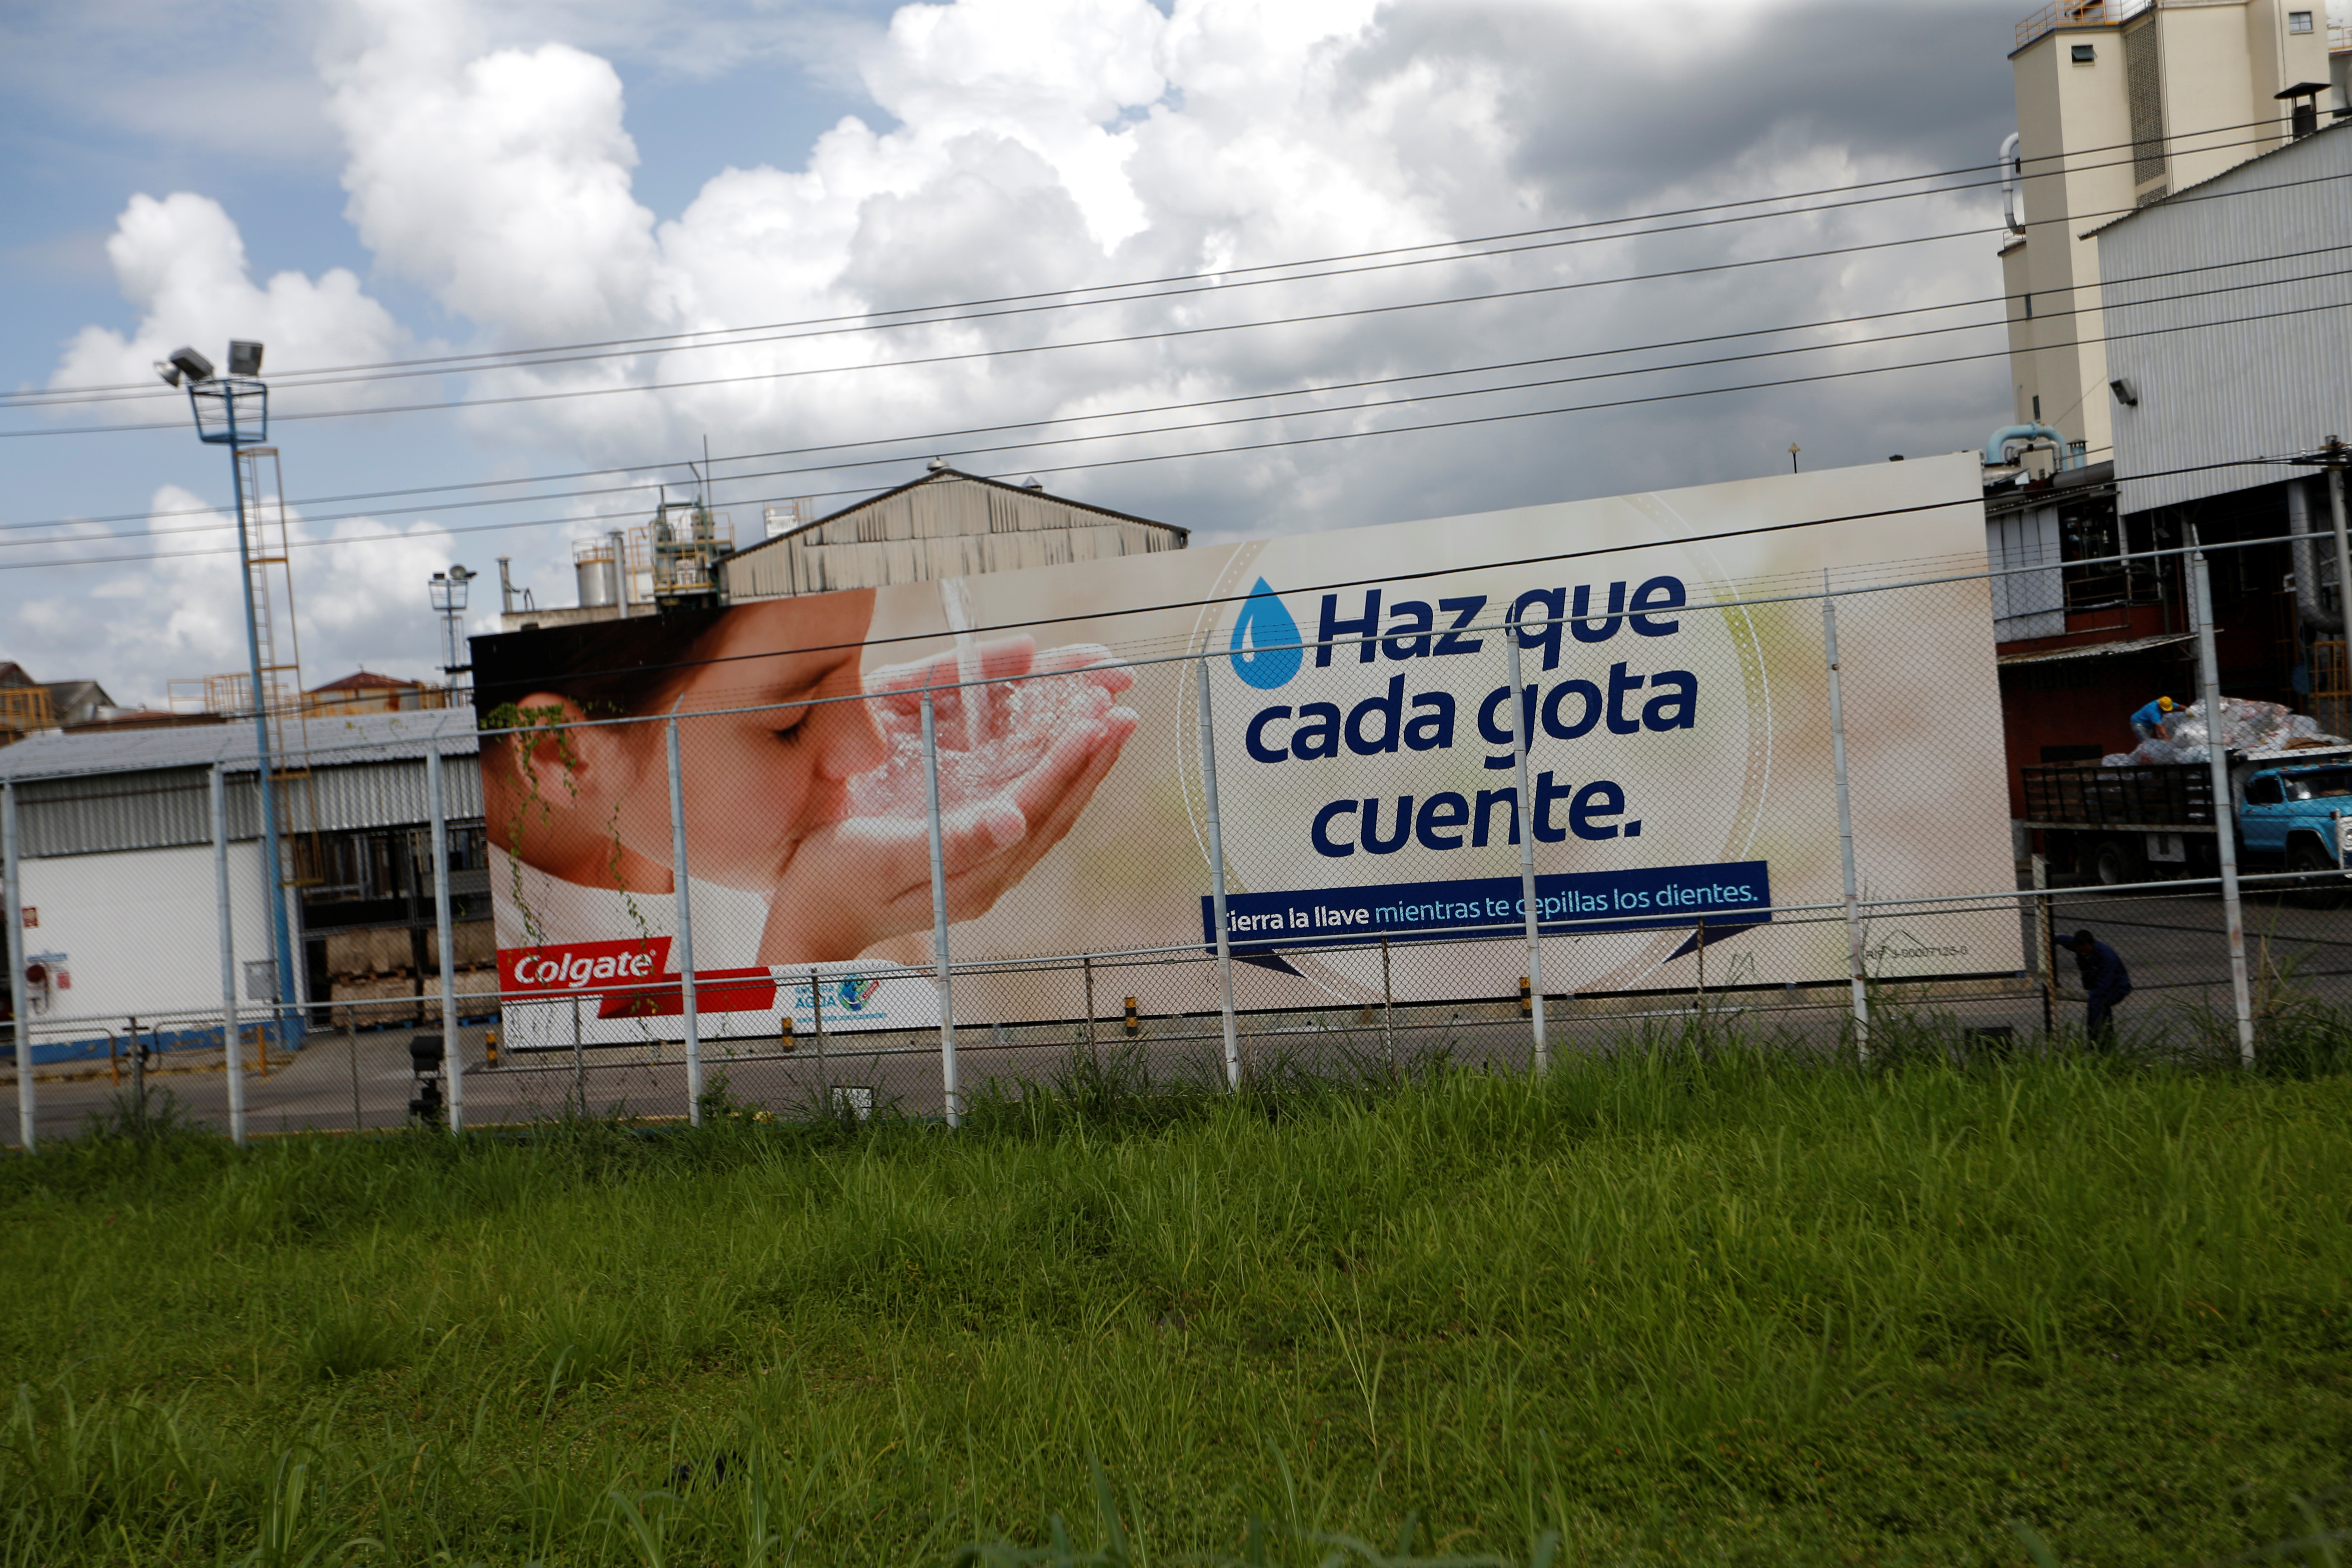 Colgate paraliza planta venezolana por falta de cajas tras salida de Smurfit Kappa, según sindicalista